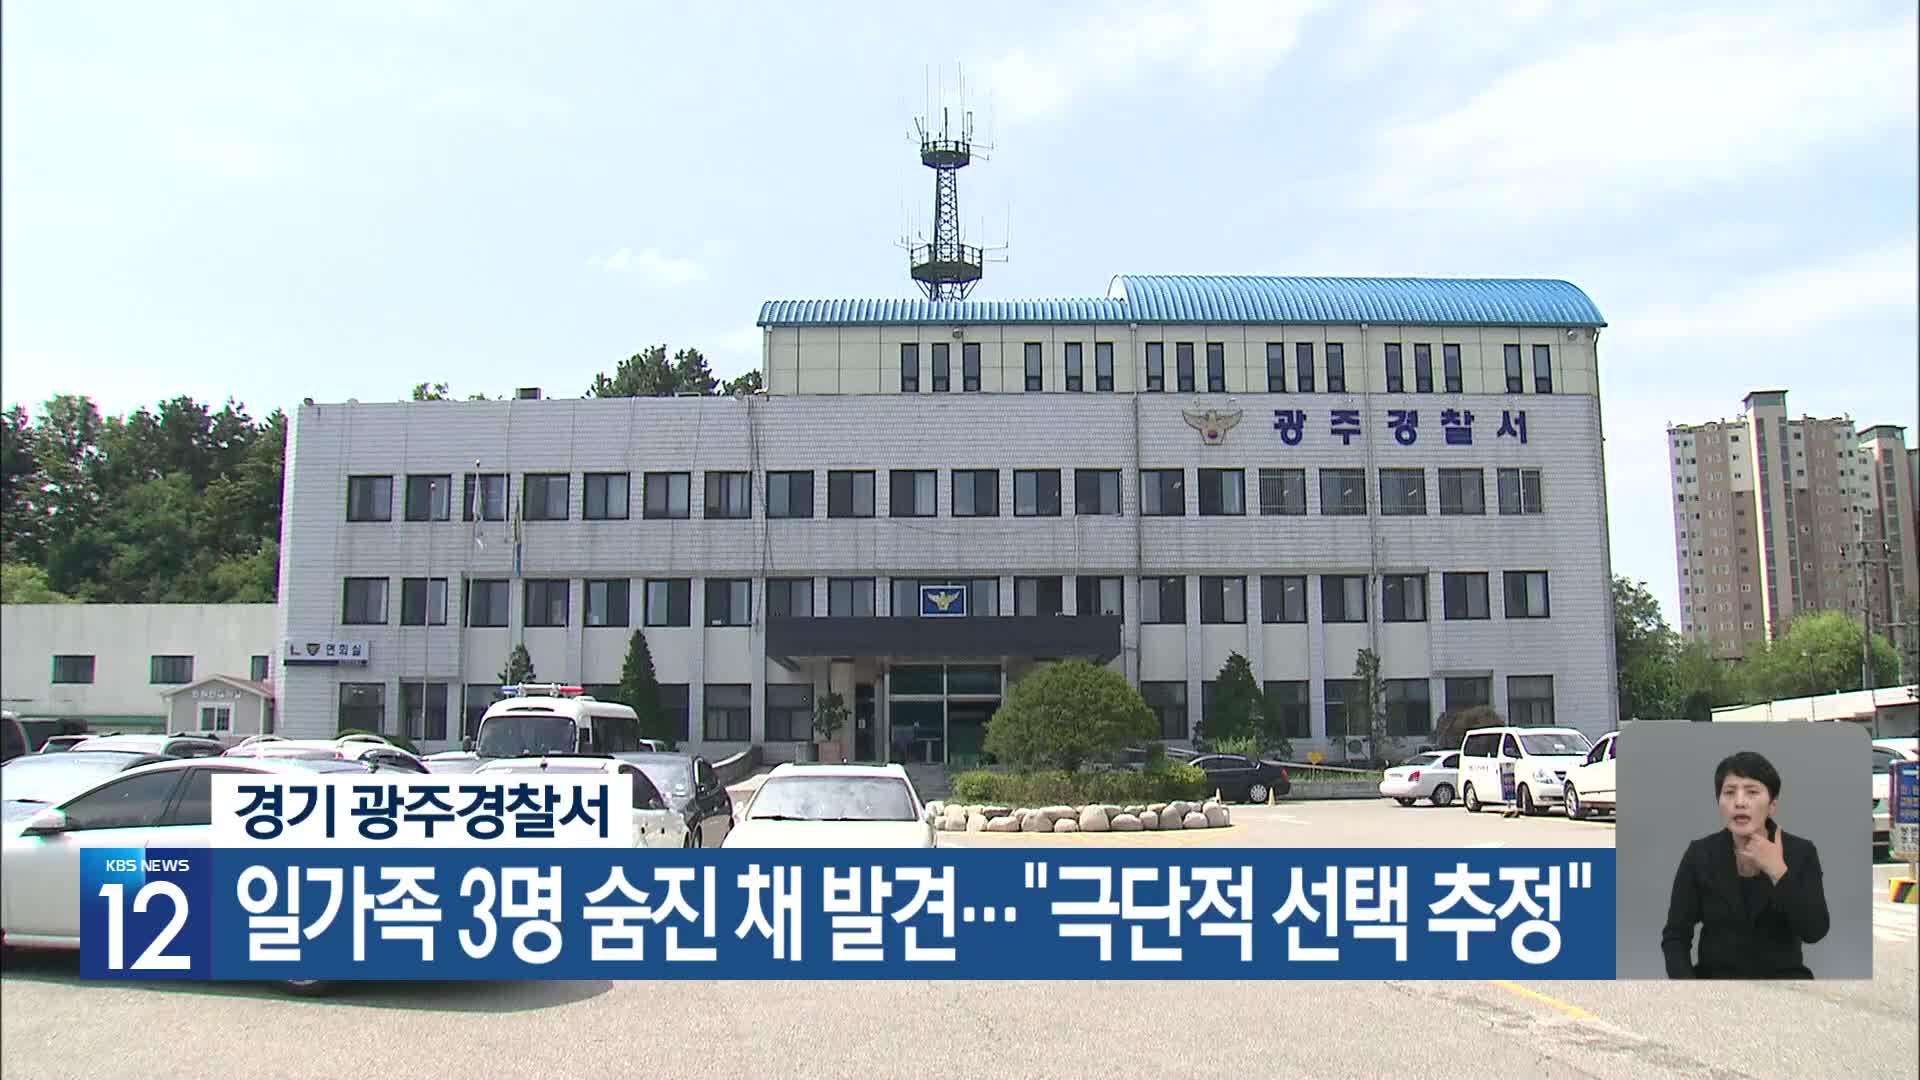 경기 광주경찰서, 일가족 3명 숨진 채 발견…“극단적 선택 추정”